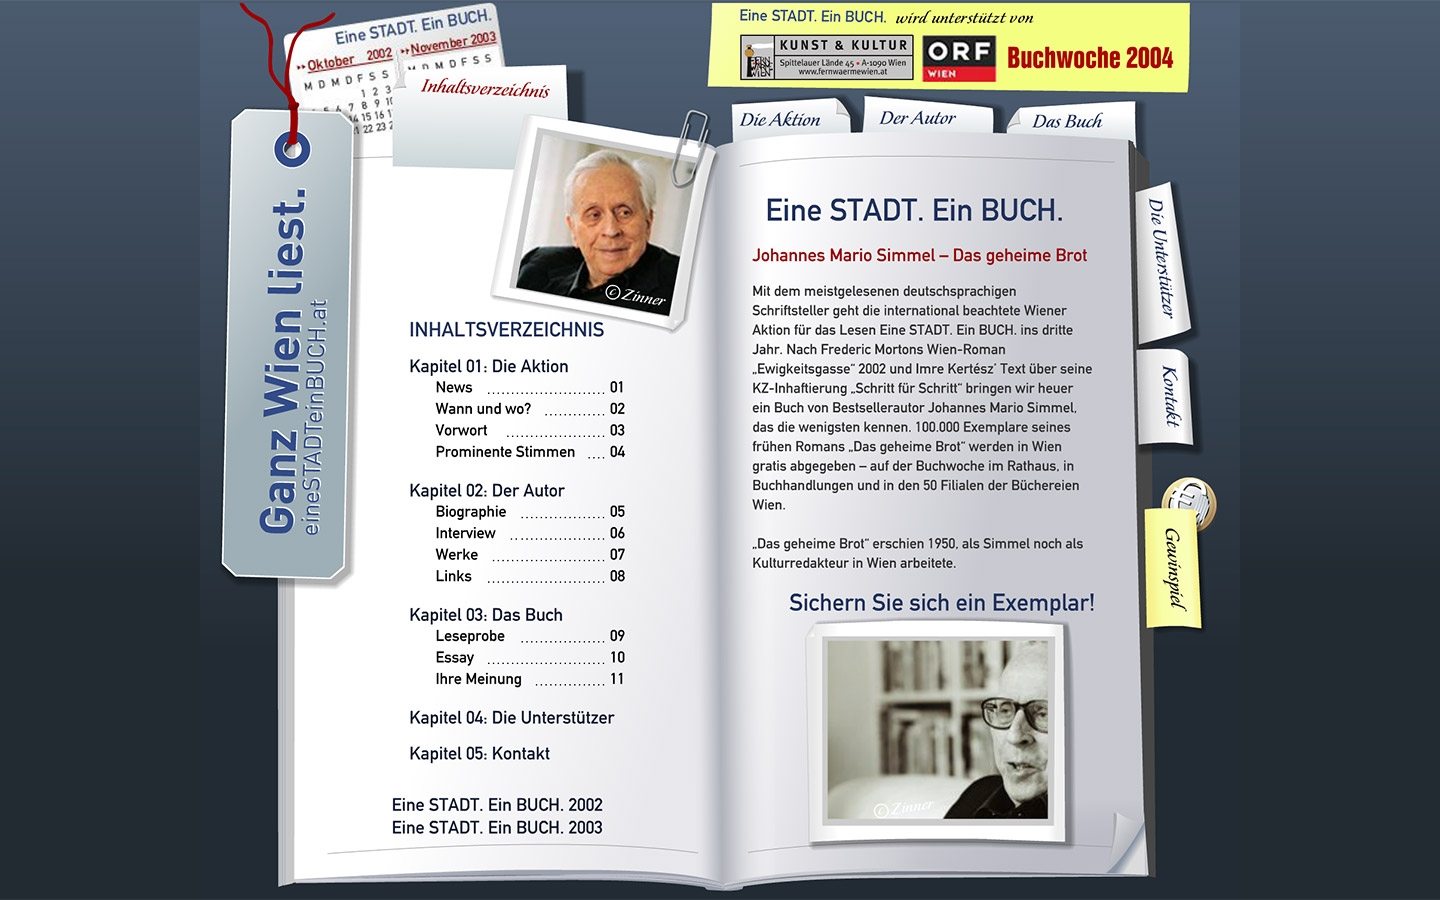 Eine Stadt. Ein Buch. 2004 | einestadteinbuch.at | 2004 (Screen Only 02) © echonet communication